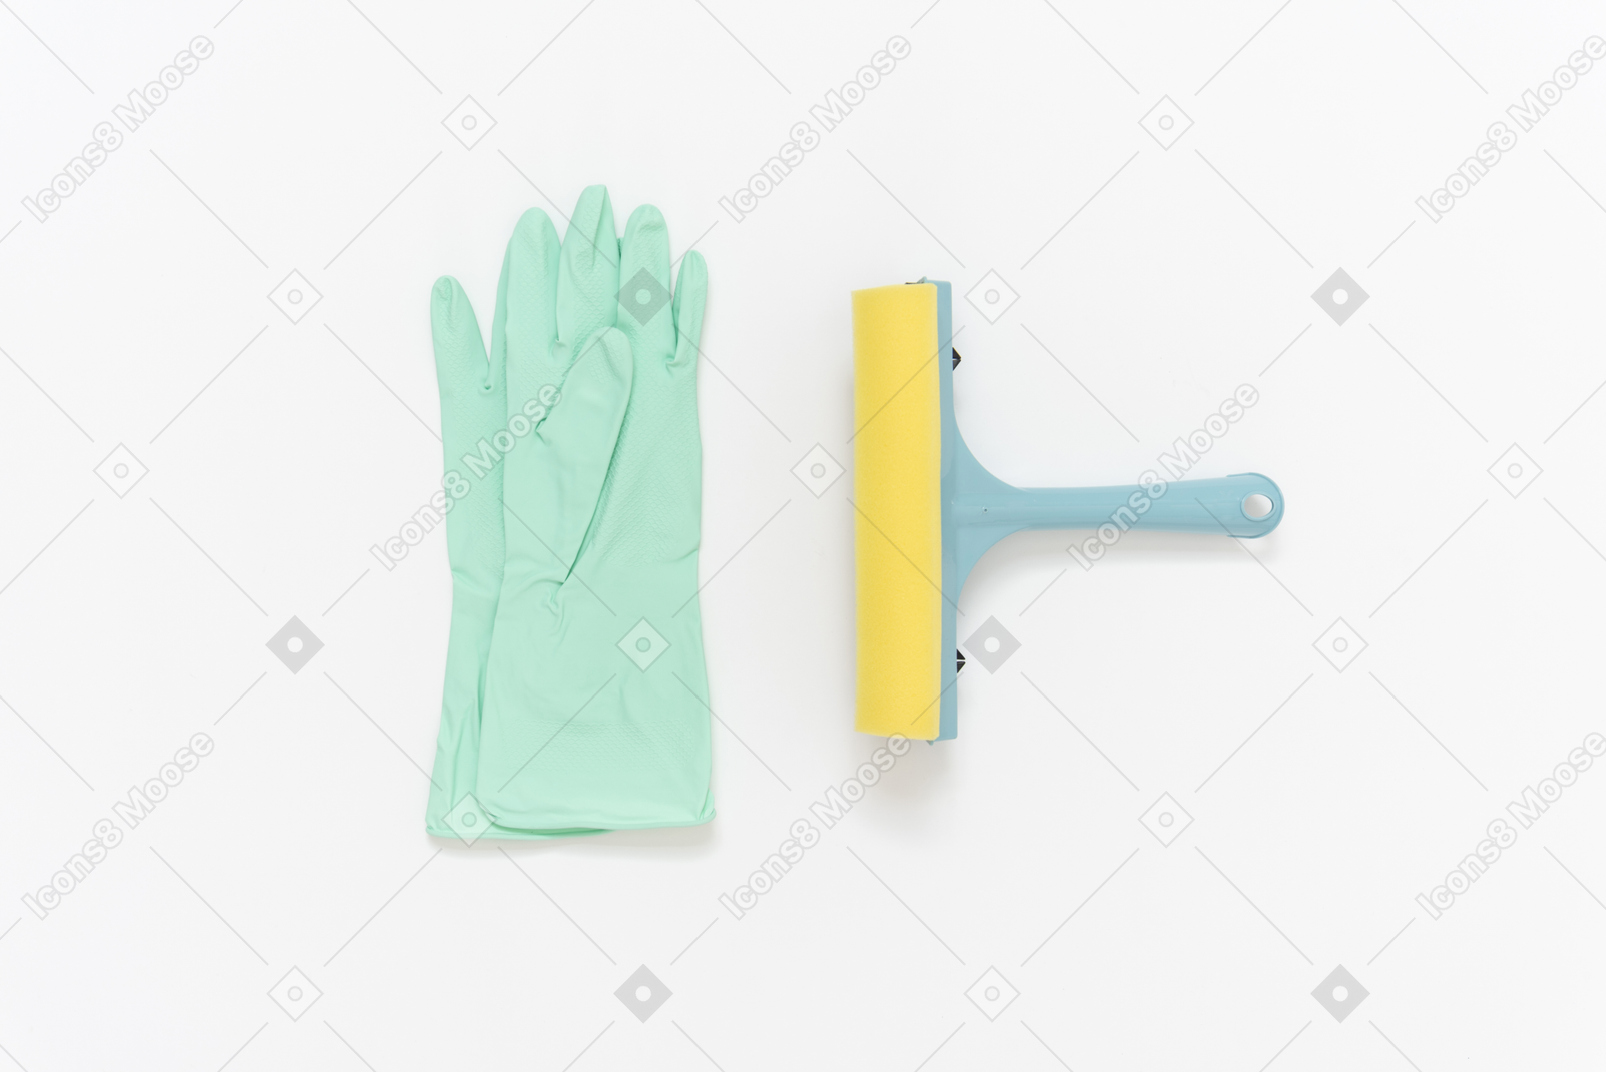 Des gants en caoutchouc et un essuie-glace se trouvant l'un à côté de l'autre sur le fond blanc uni